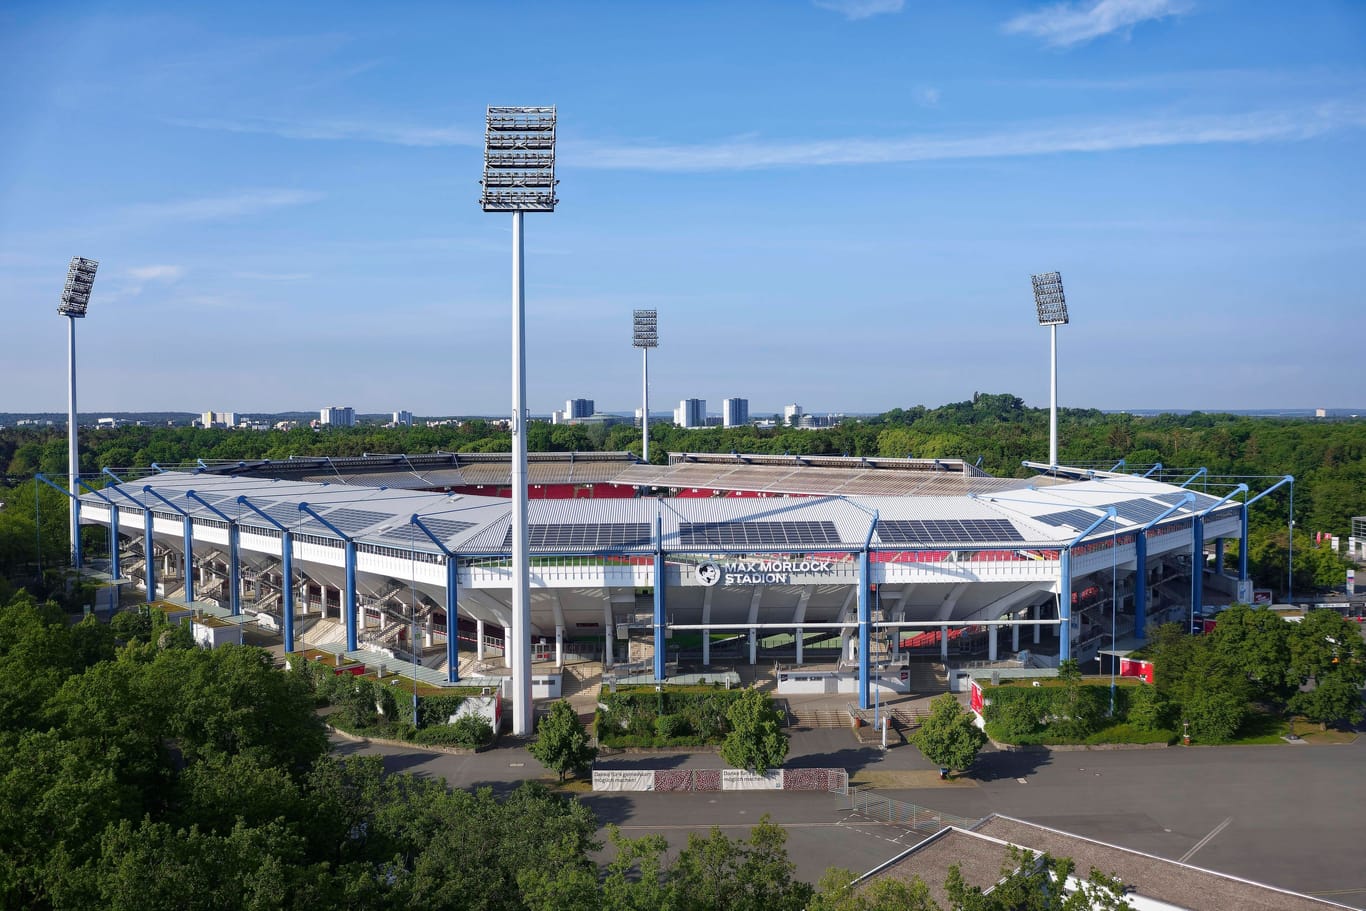 Das Max-Morlock-Stadion ist die Heimspielstätte des 1. FC Nürnberg.